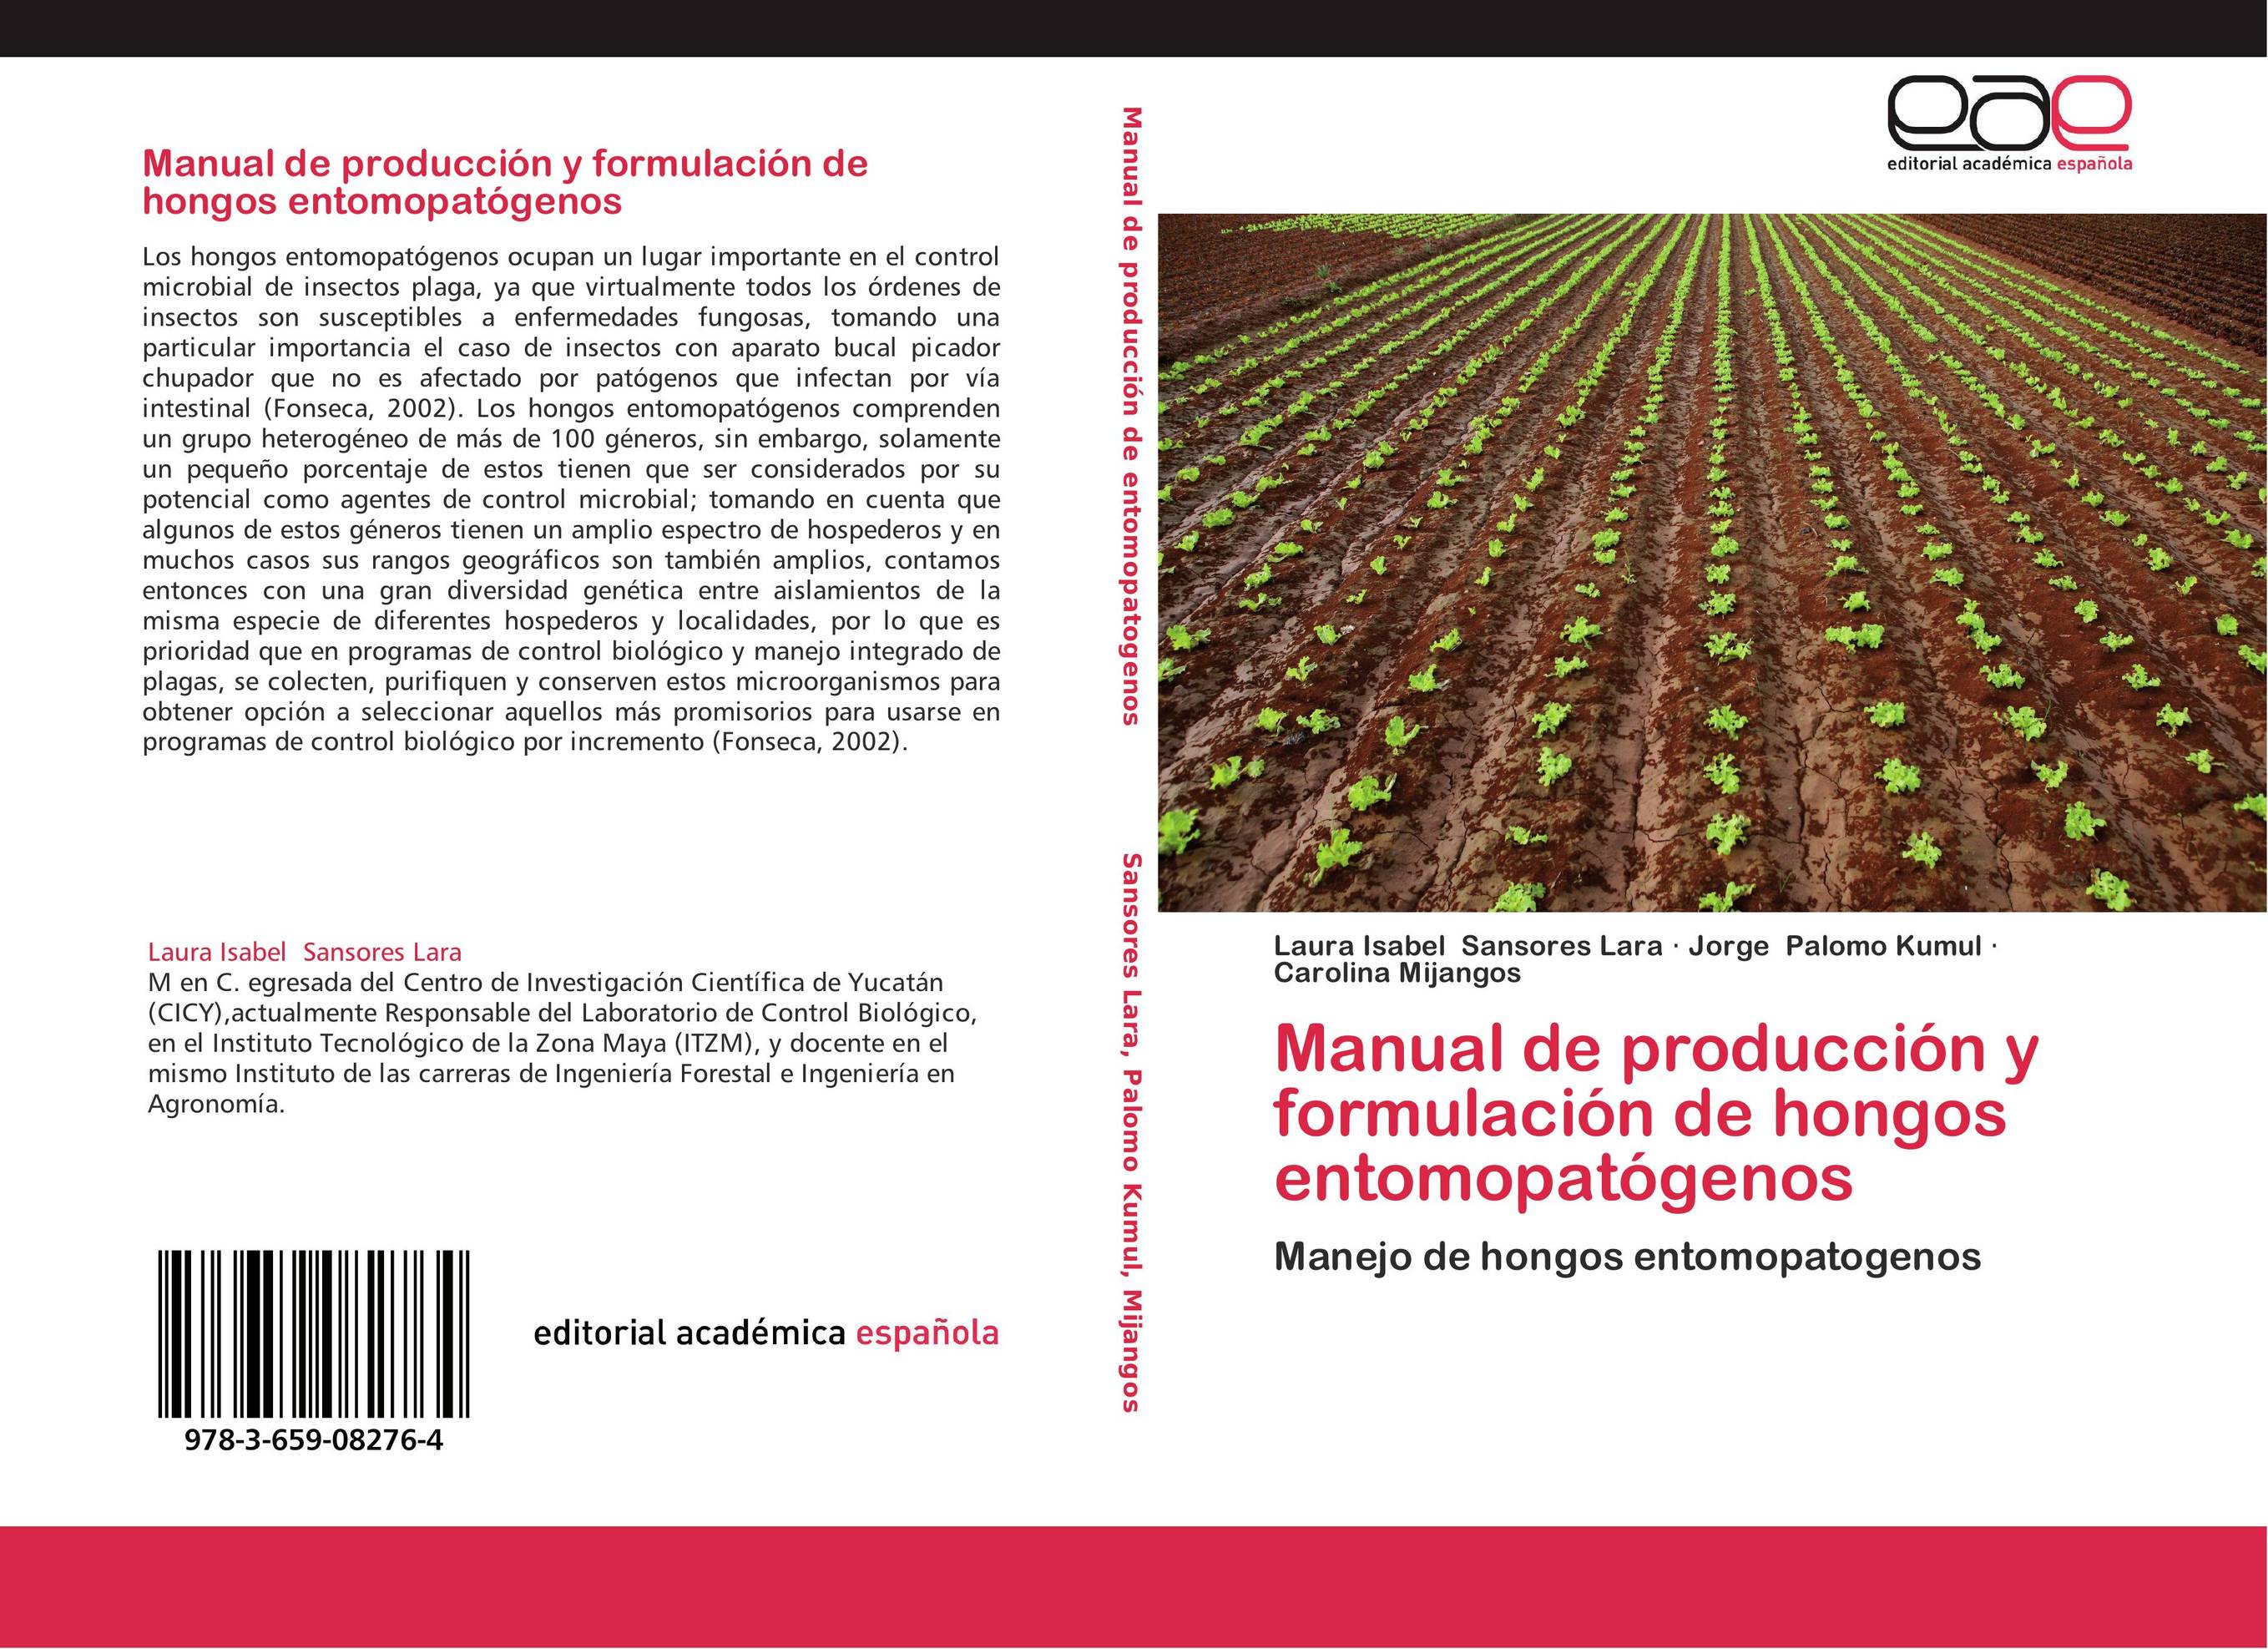 Manual de producción y formulación de hongos entomopatógenos